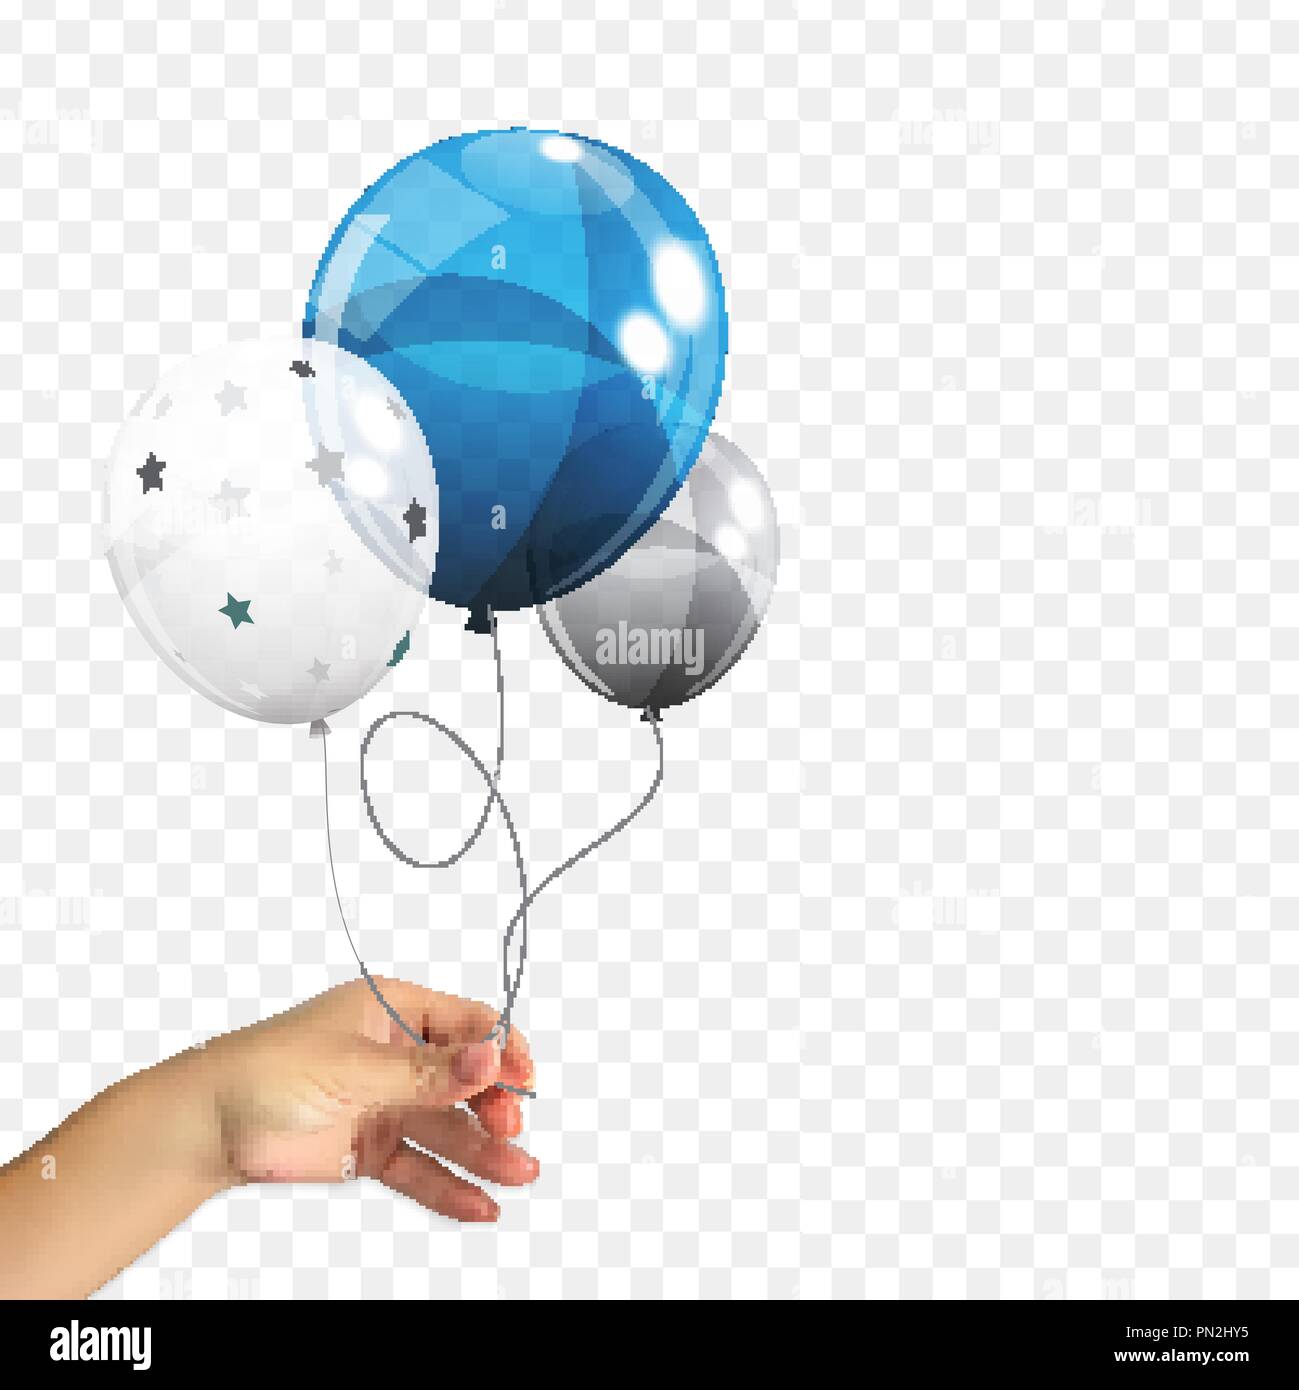 Enriquecer navegador arbusto 3D realista naturalista de la mano de un hombre sosteniendo un grupo de  globos de helio brillante Color de fondo Transperent aislados. Conjunto de  plata, azul, blanco con Confetti globos para cumpleaños,